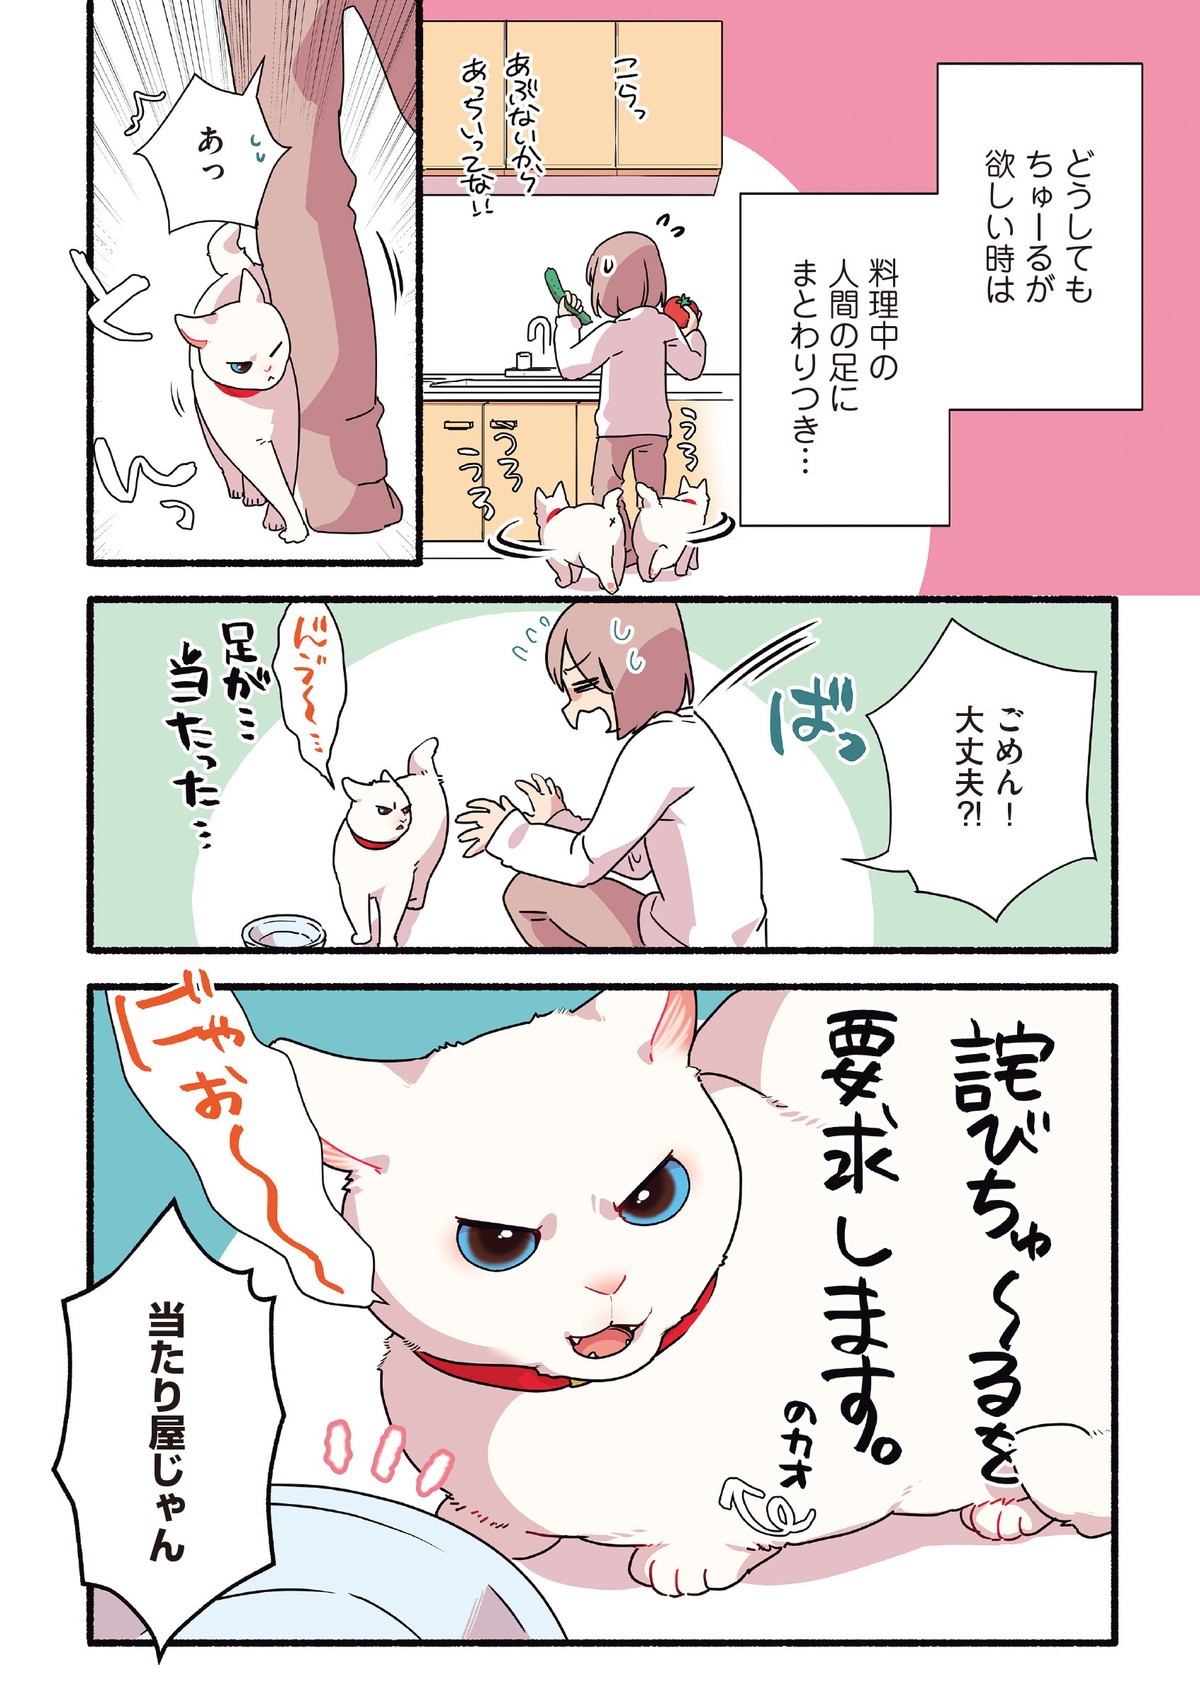 愛されたがりの白猫ミコさん